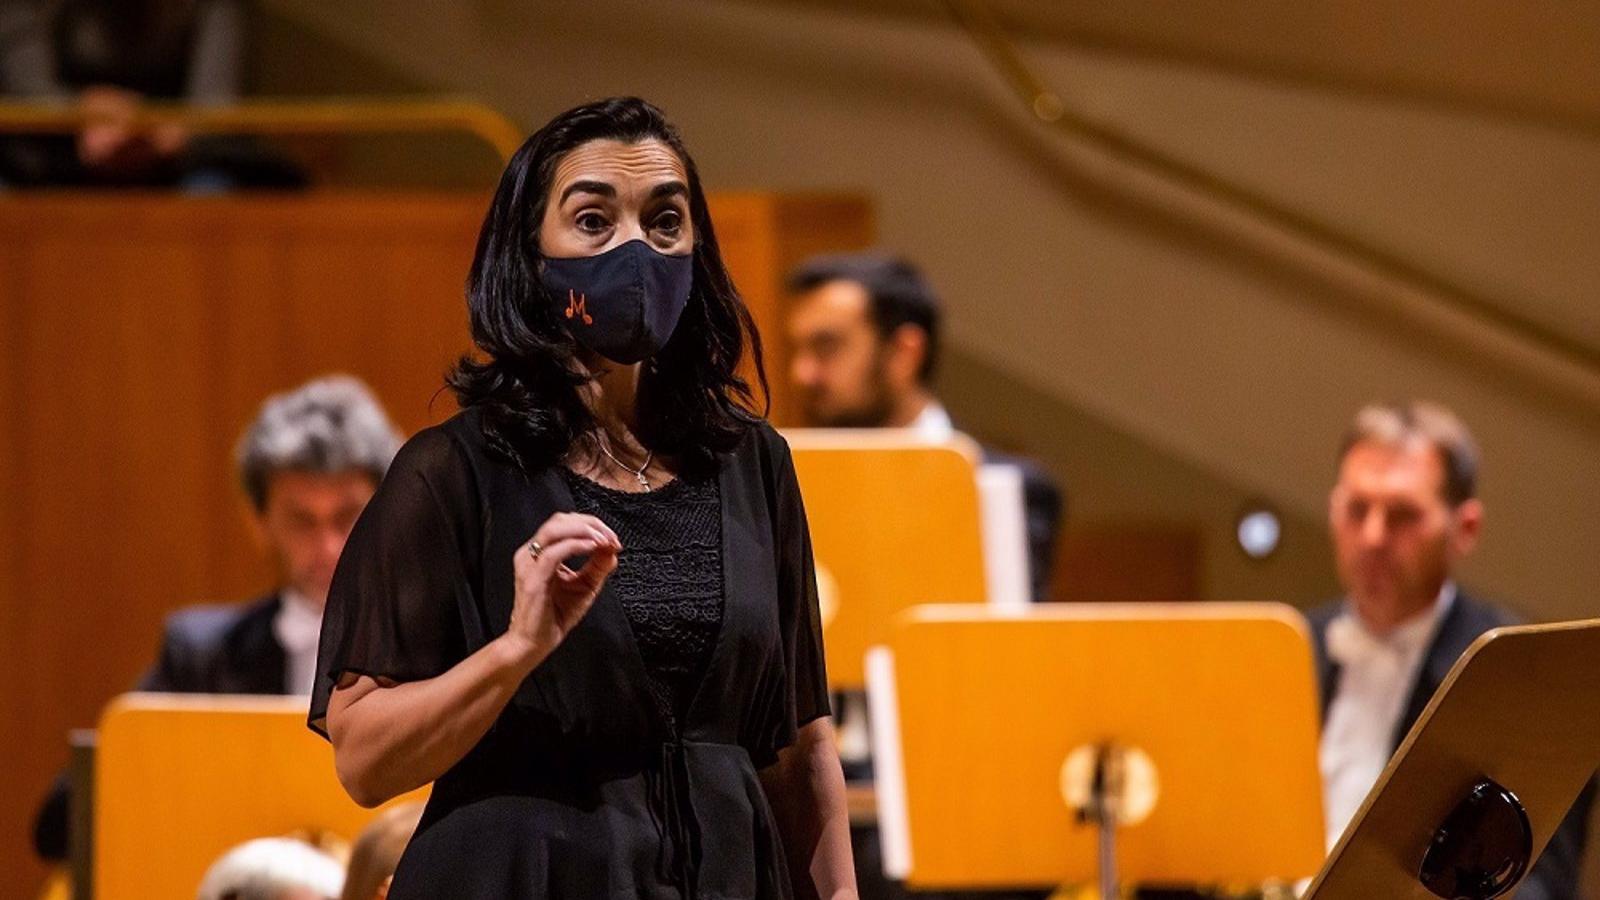 Silvia Sanz vuelve al Auditorio Nacional el 26 de febrero con un ciclo para reunir a distintas generaciones en la música en vivo